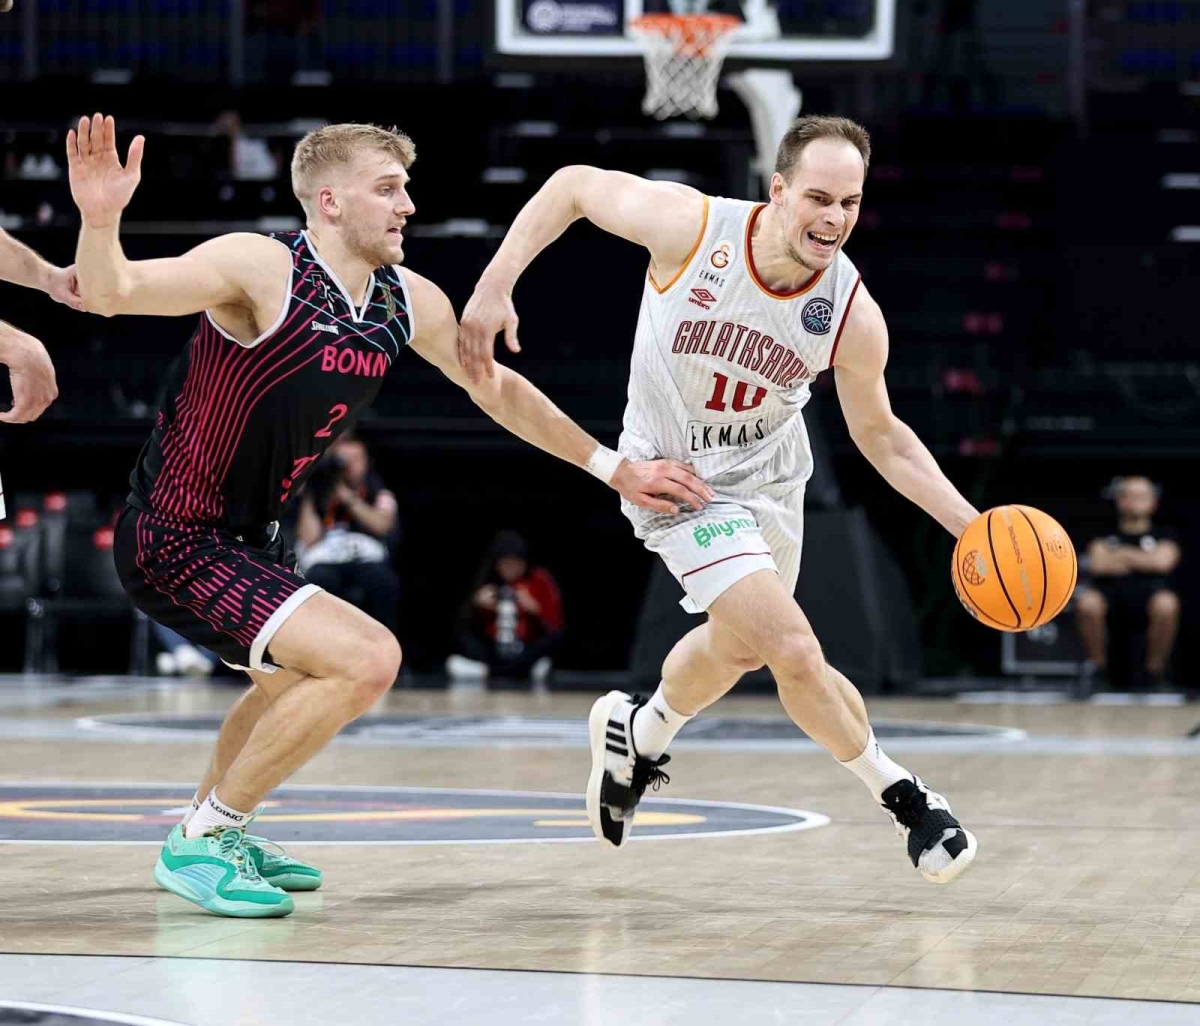 FIBA Basketbol Şampiyonlar Ligi: Galatasaray: 98 - Bonn: 85
